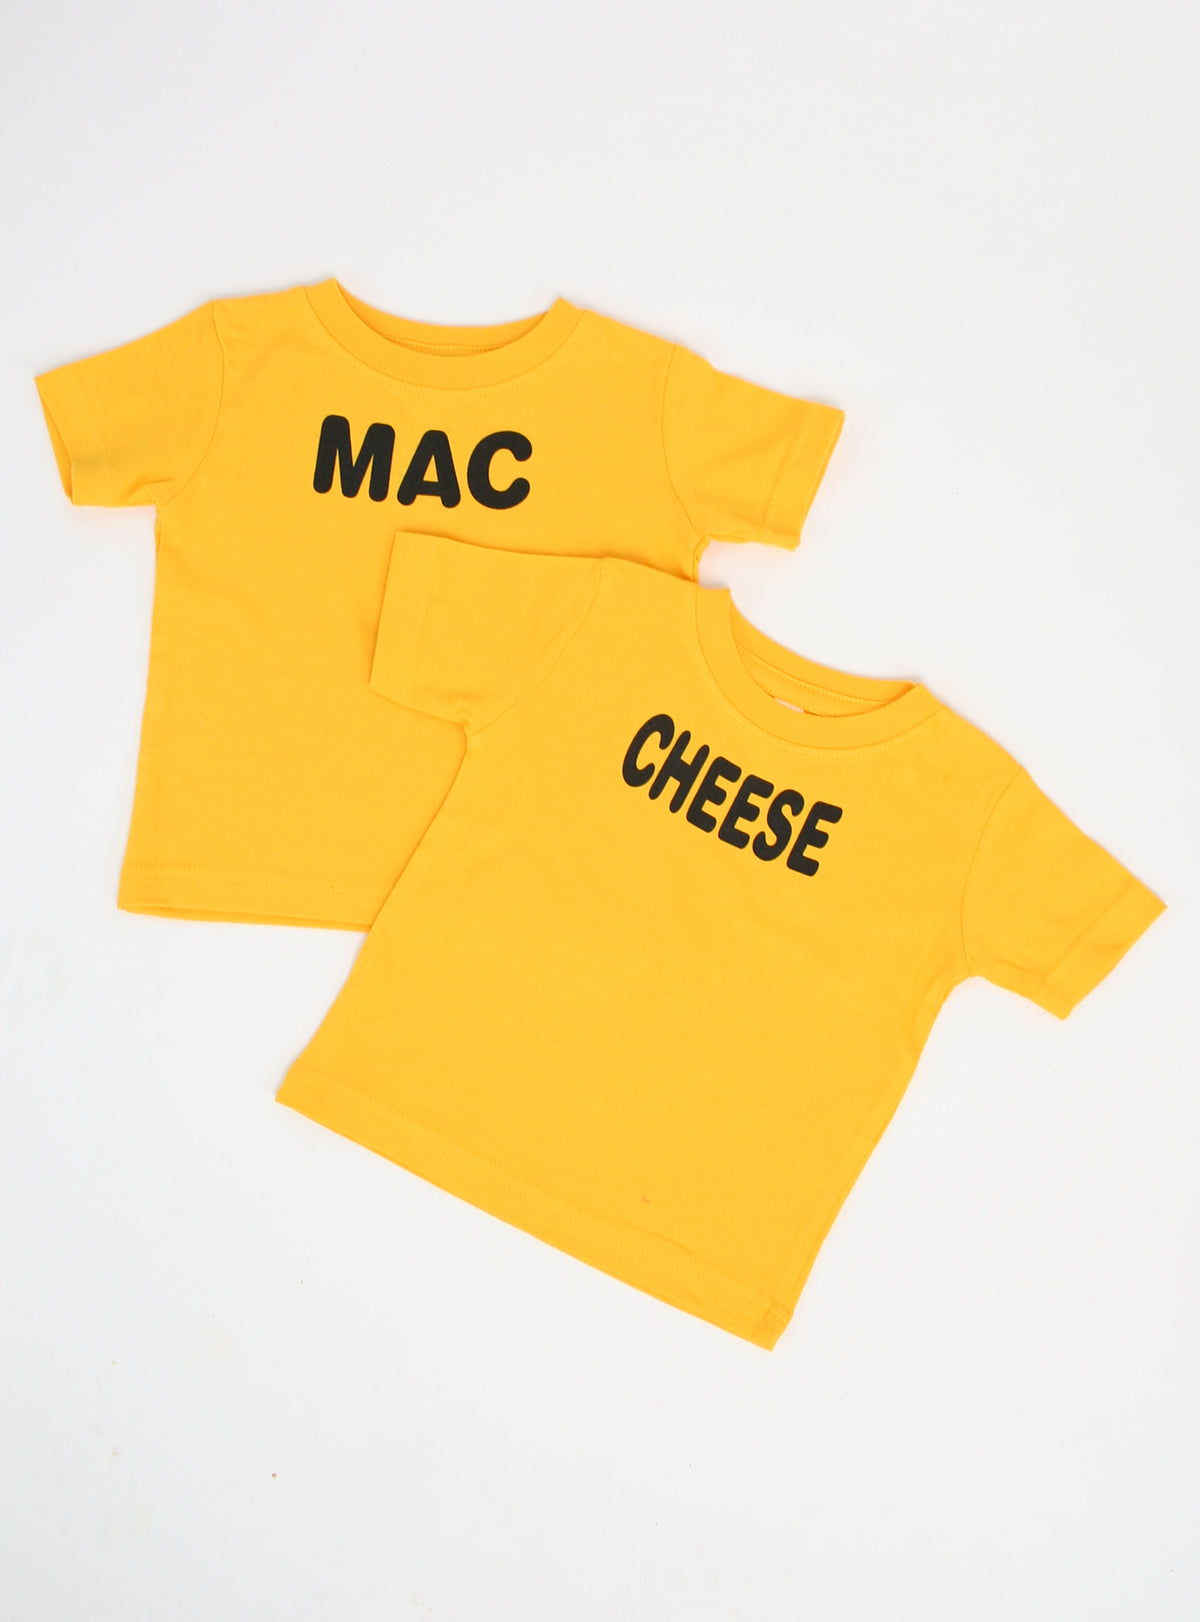 Mac + Cheese (2-Pack) Dog Tee